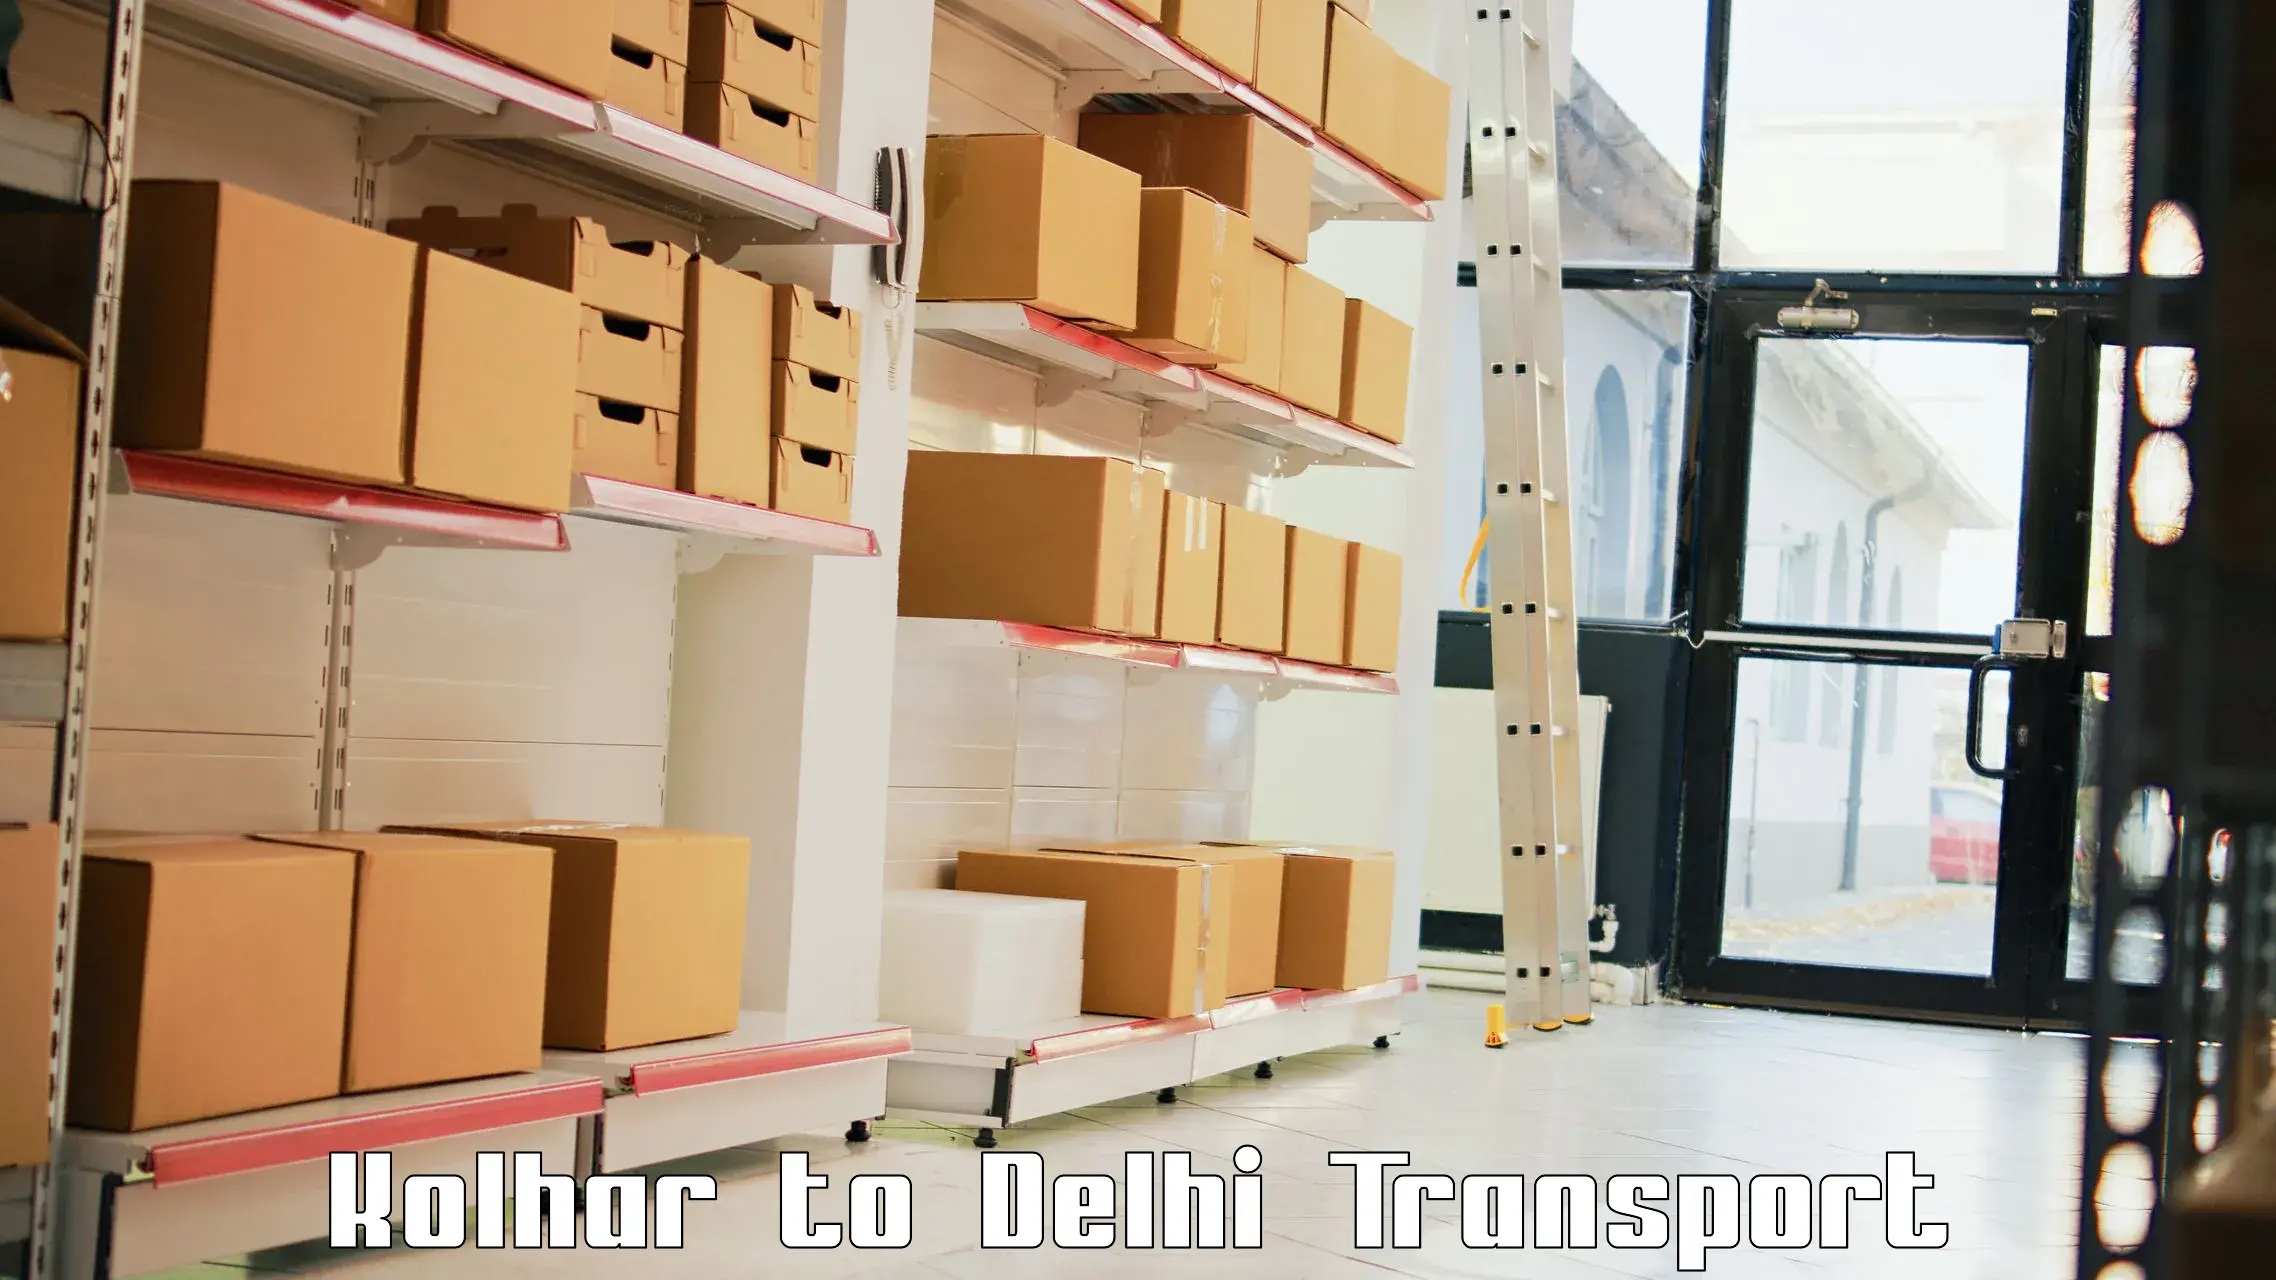 Online transport booking Kolhar to Jawaharlal Nehru University New Delhi